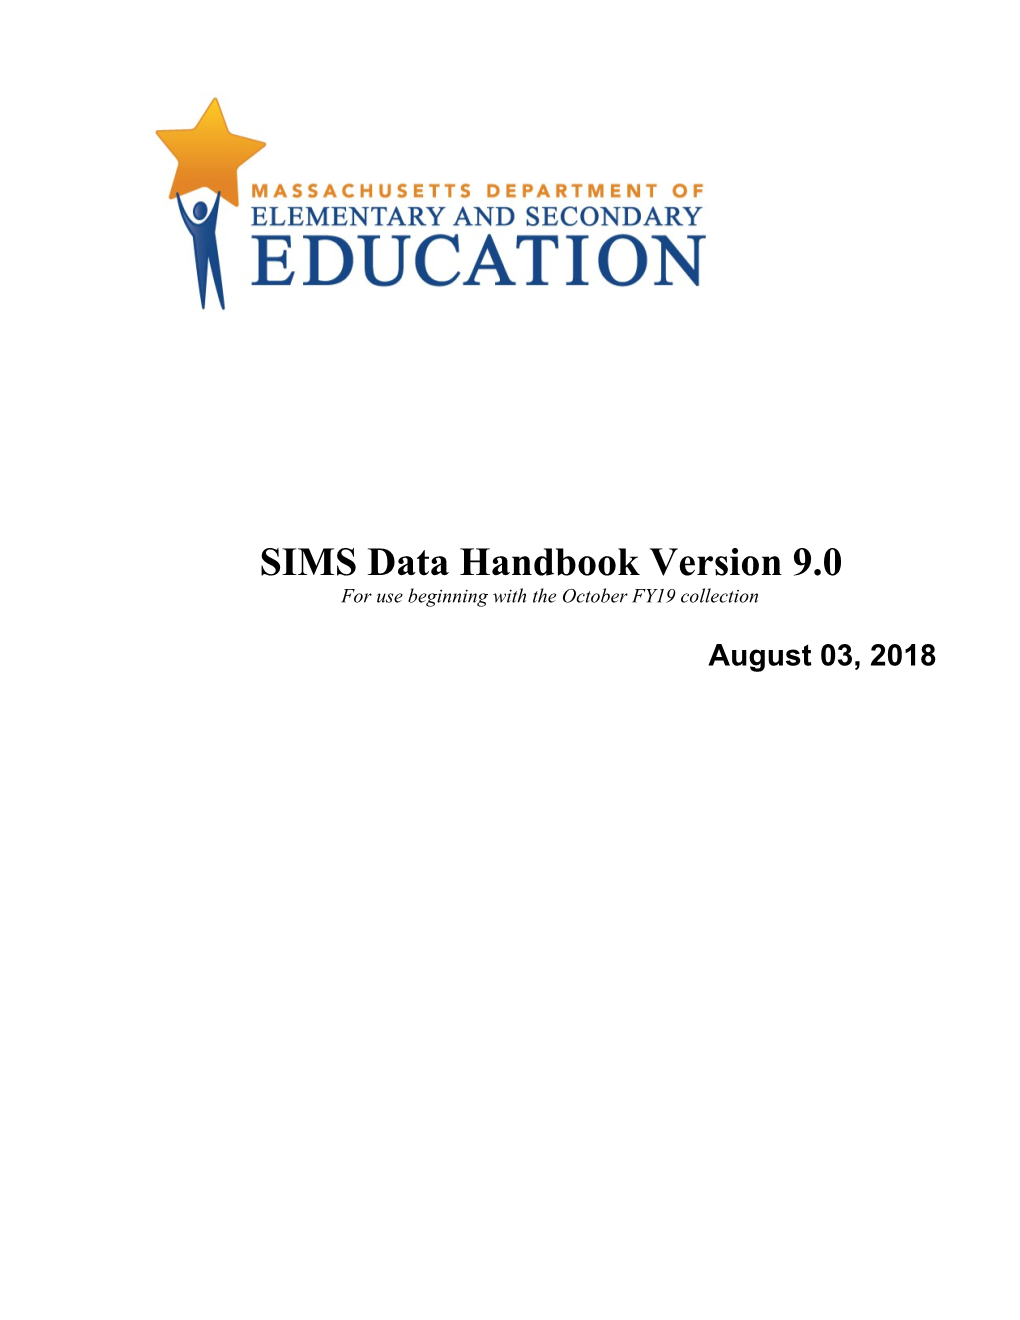 SIMS Data Handbook V. 9.0